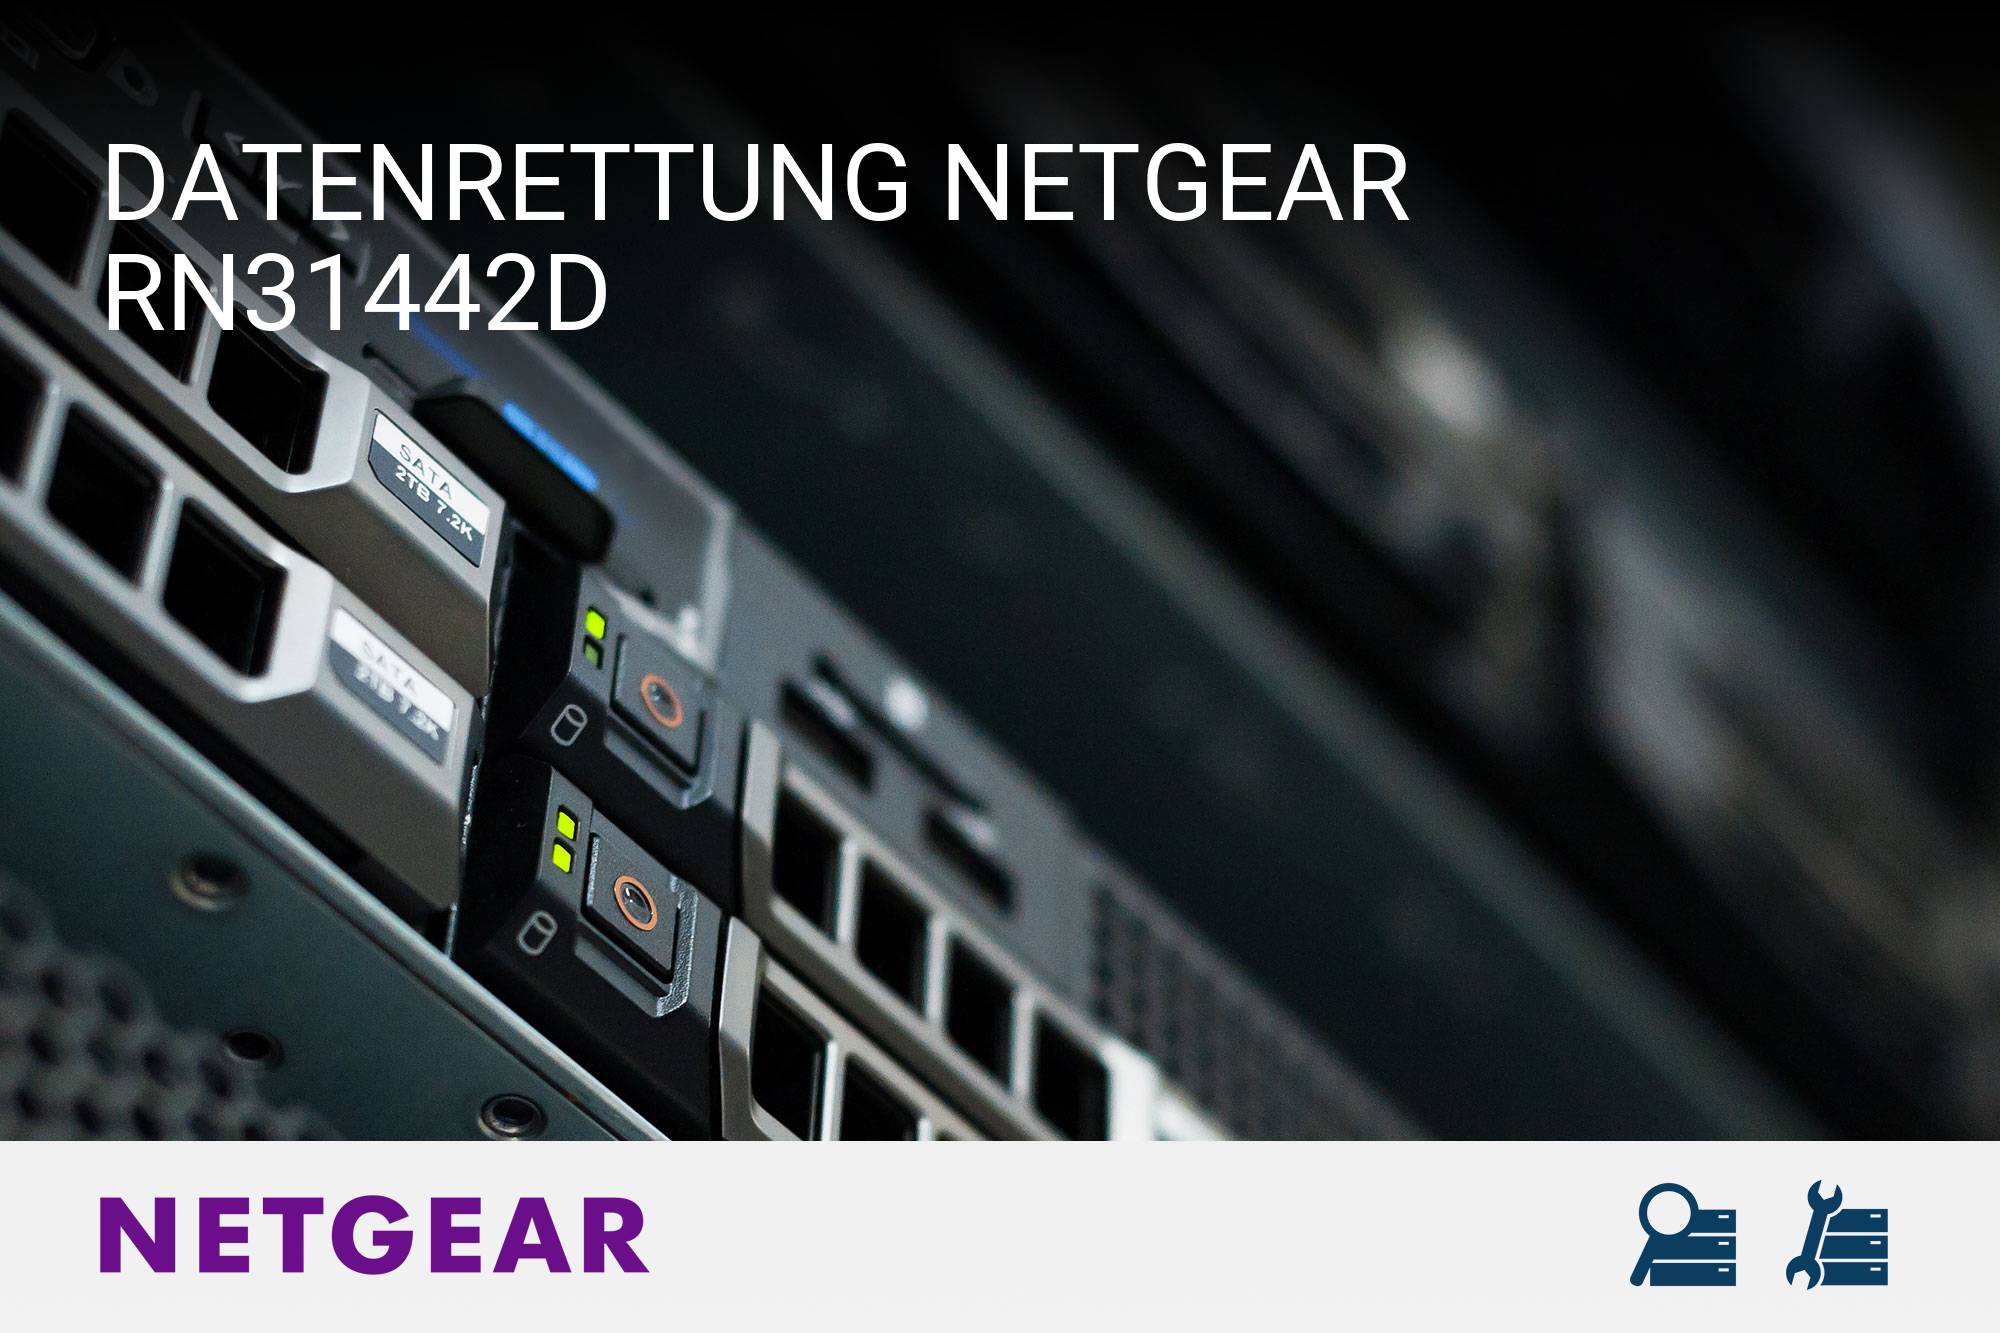 Netgear RN31442D